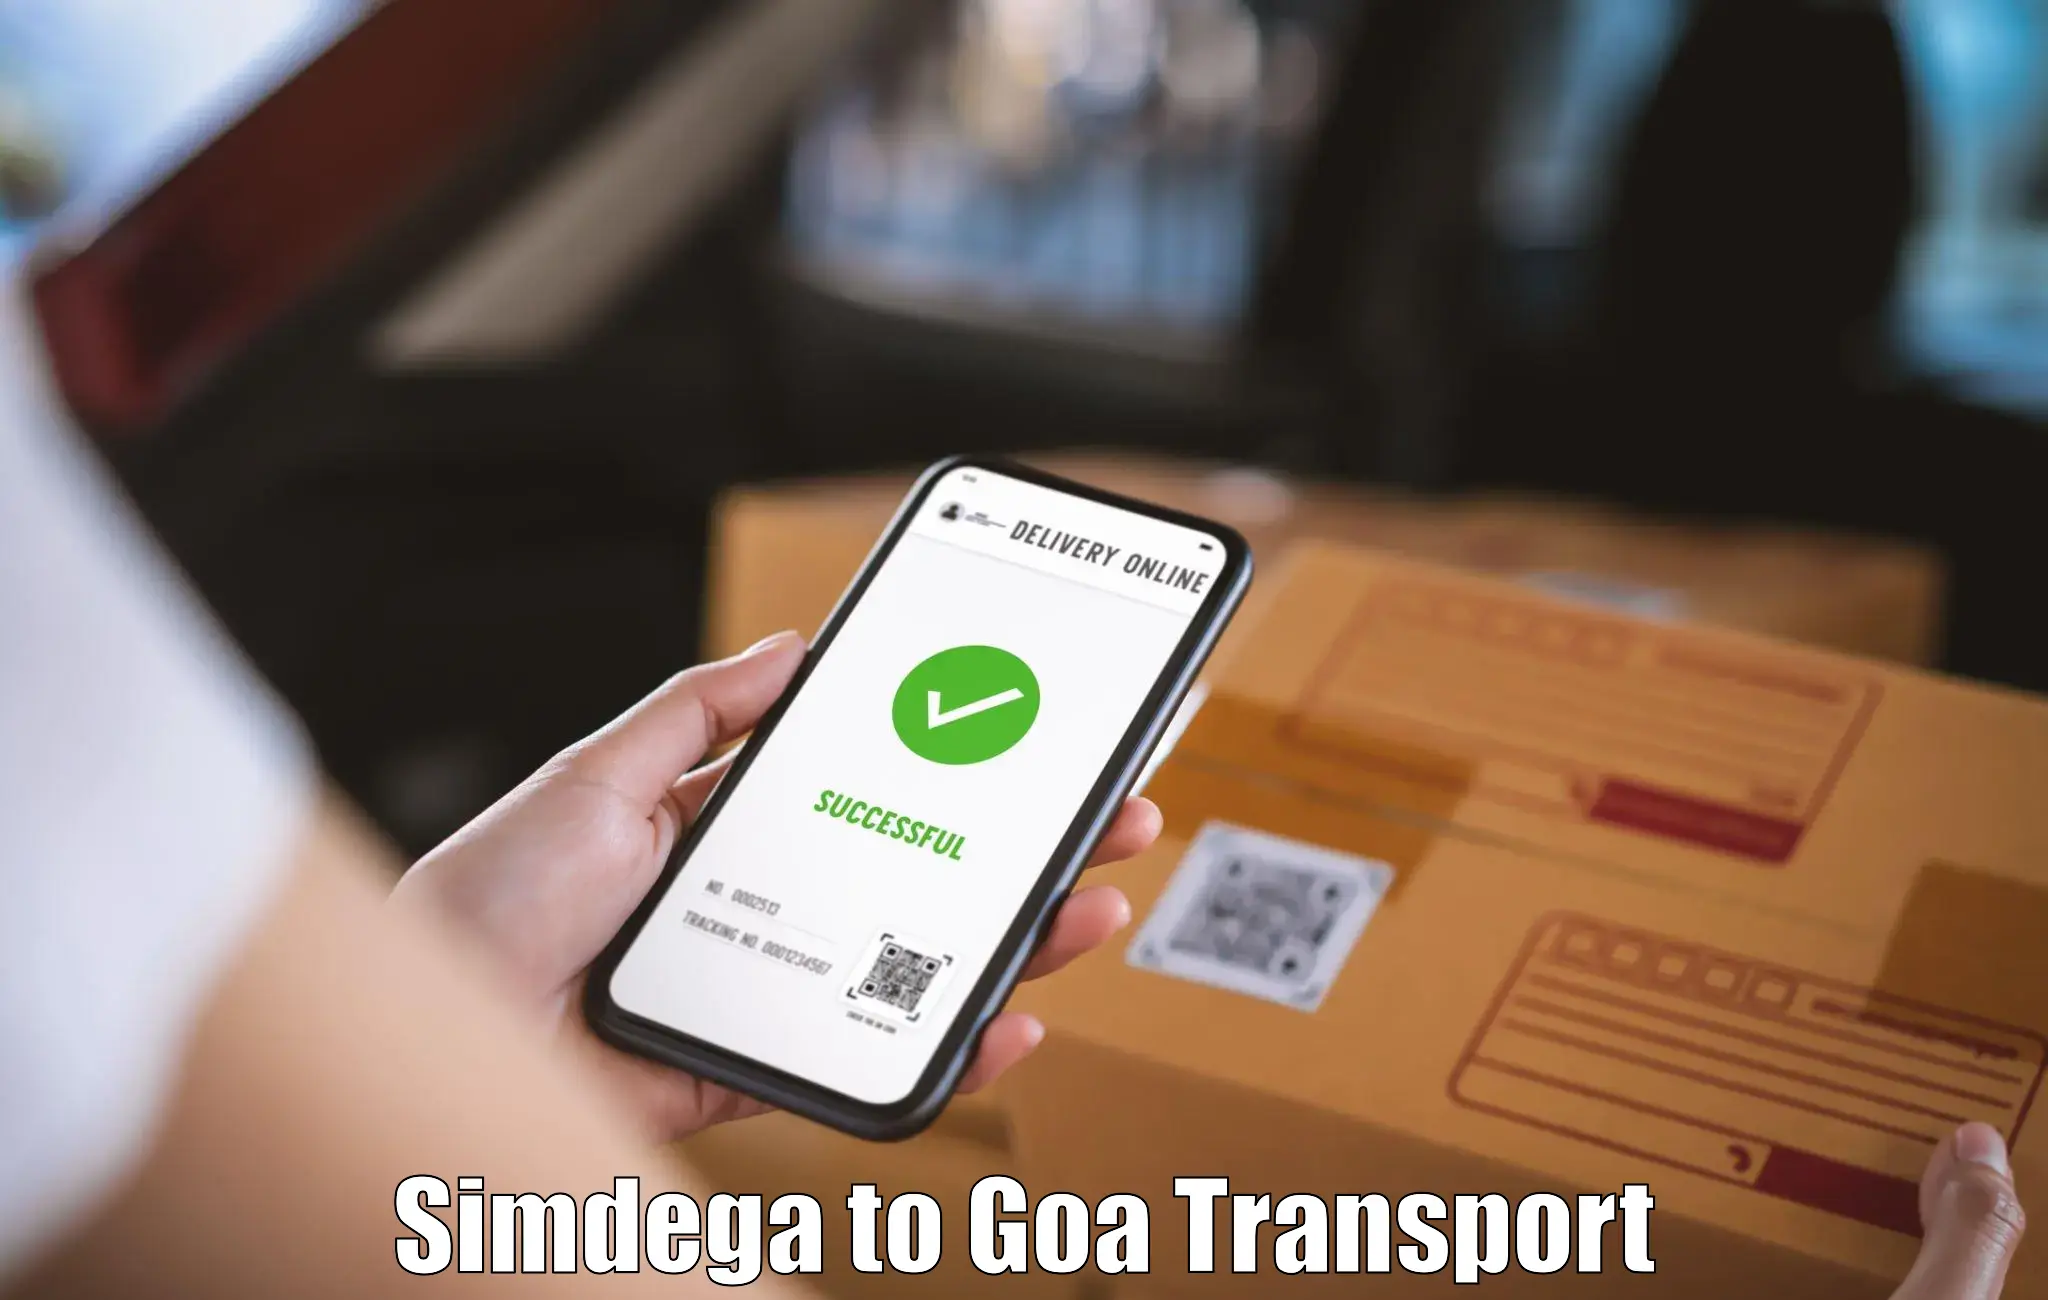 Shipping partner Simdega to NIT Goa